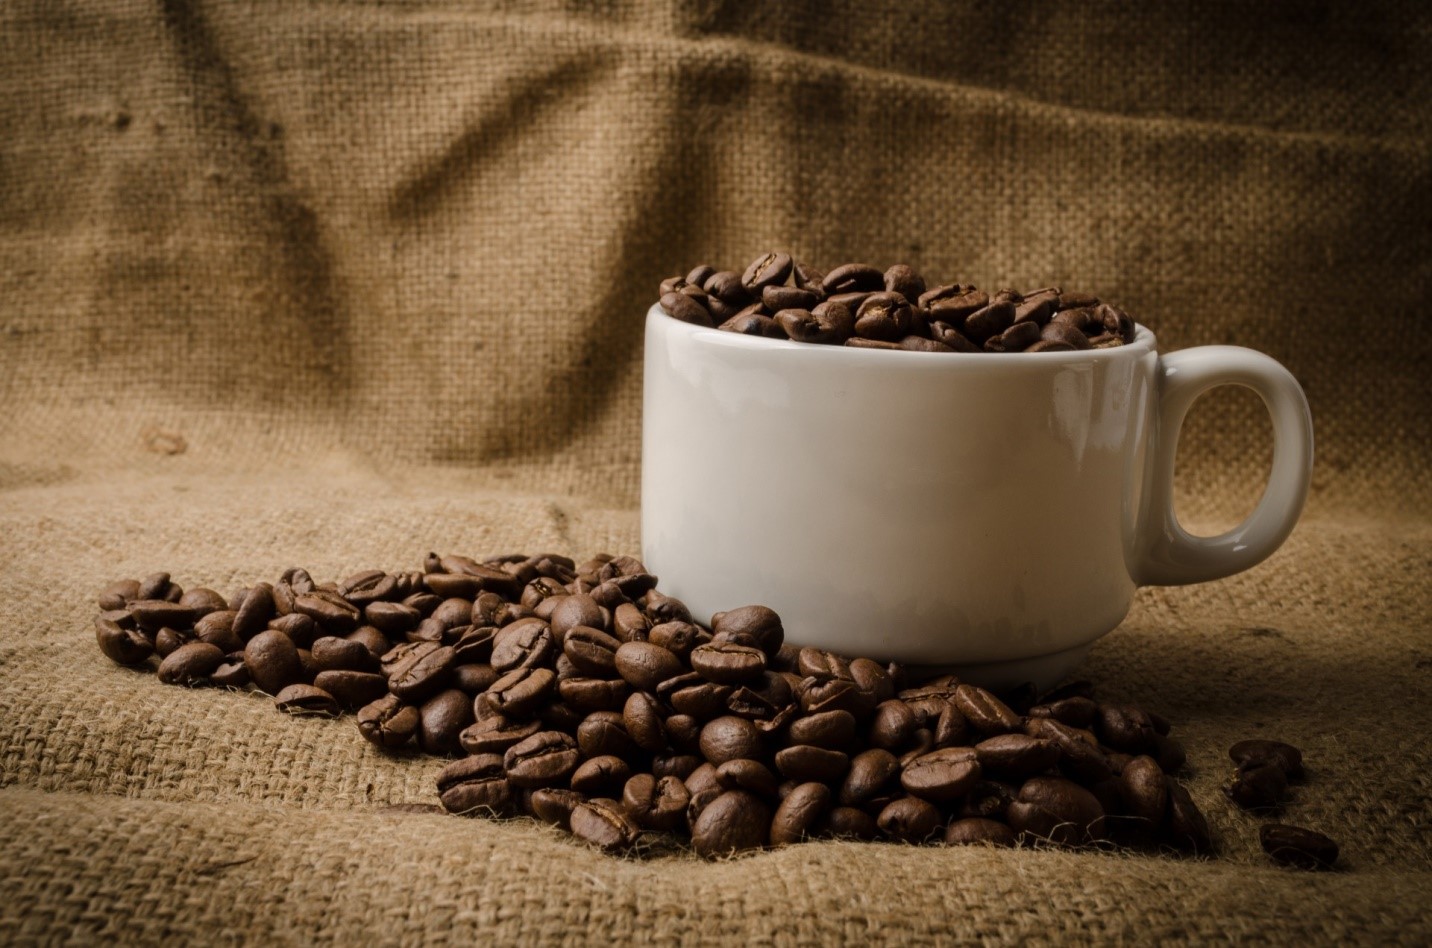 خرید قهوه فله به صرفه تر است یا بسته بندی شده؟ | لیست قیمت